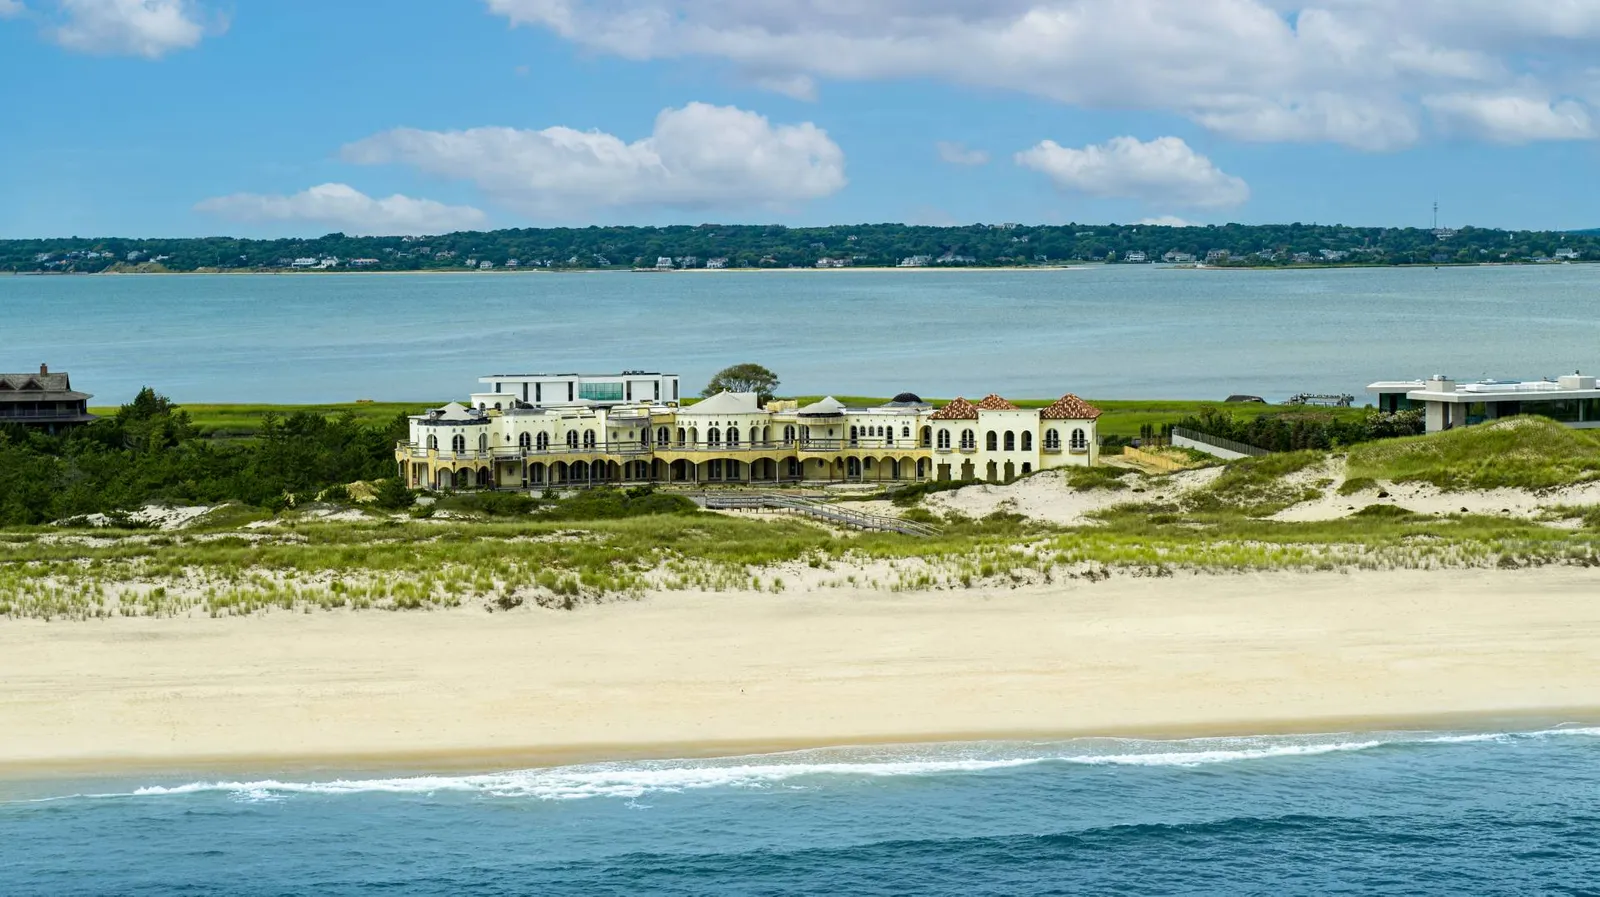 Οπου κι αν πας θα πέσεις πάνω σε πλούσιους ή διάσημους – Πώς τα Hamptons έγιναν real-estate παράδεισος